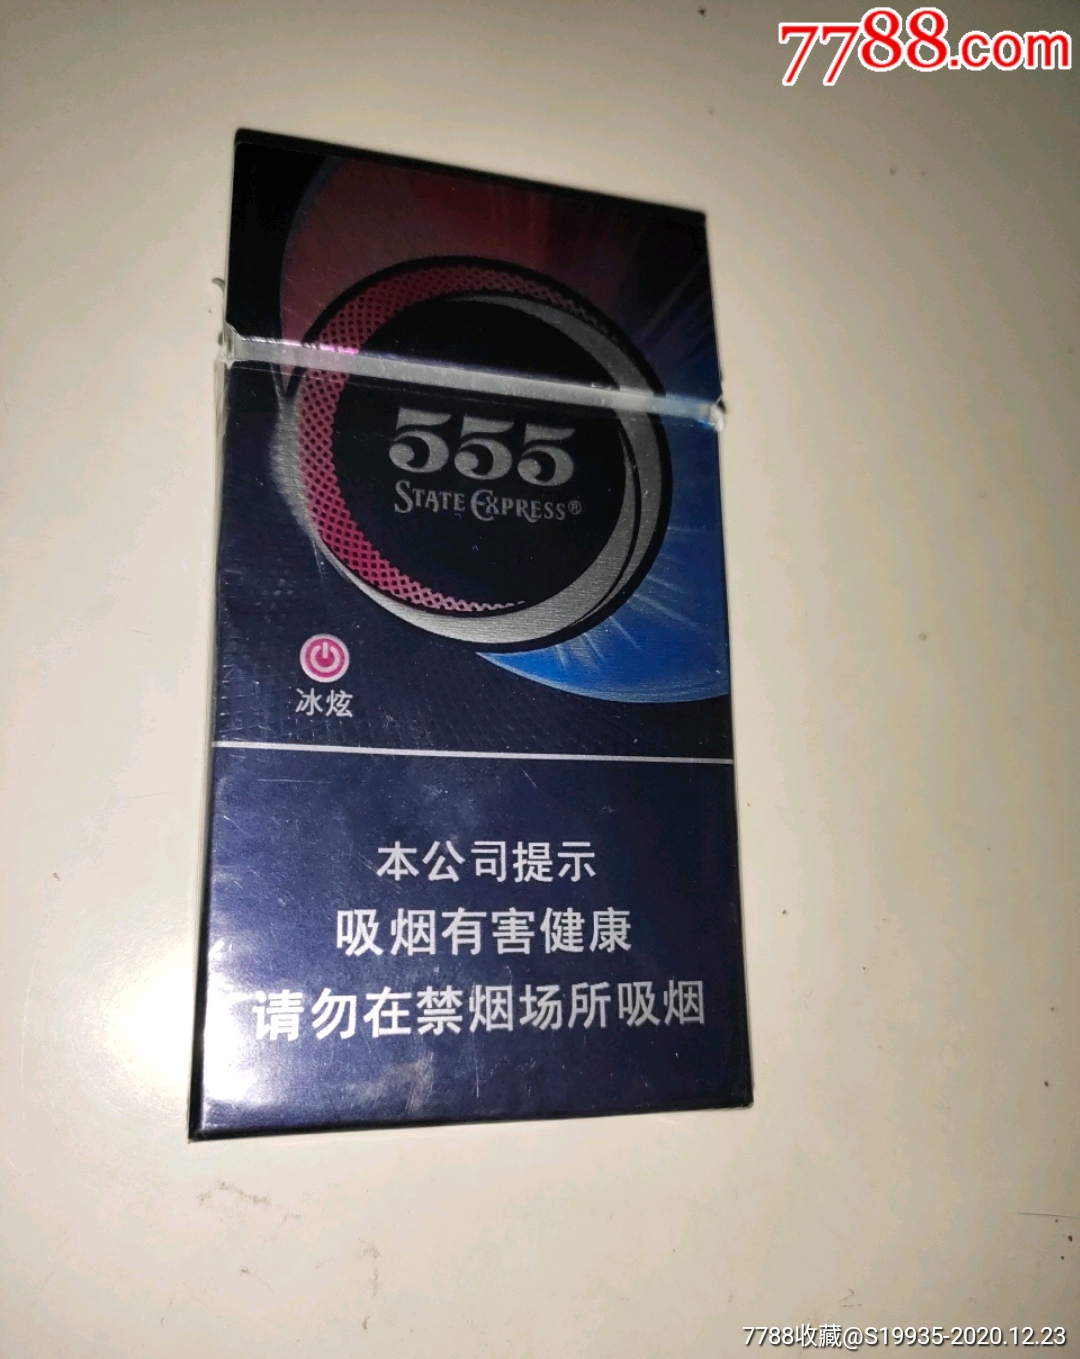 555细支香烟图片